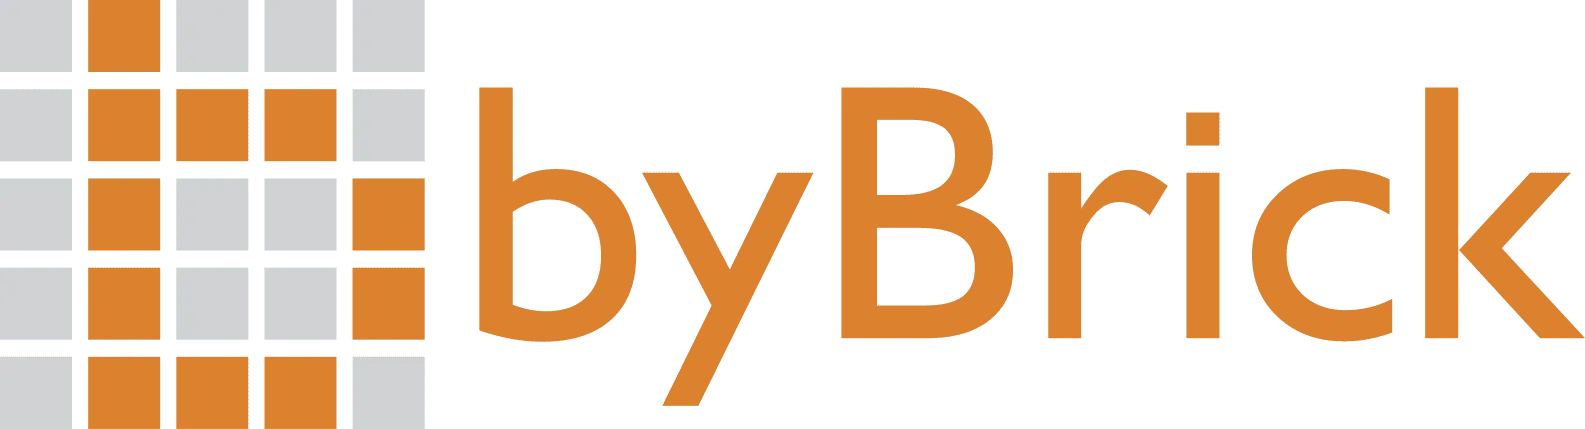 ByBricks's logo